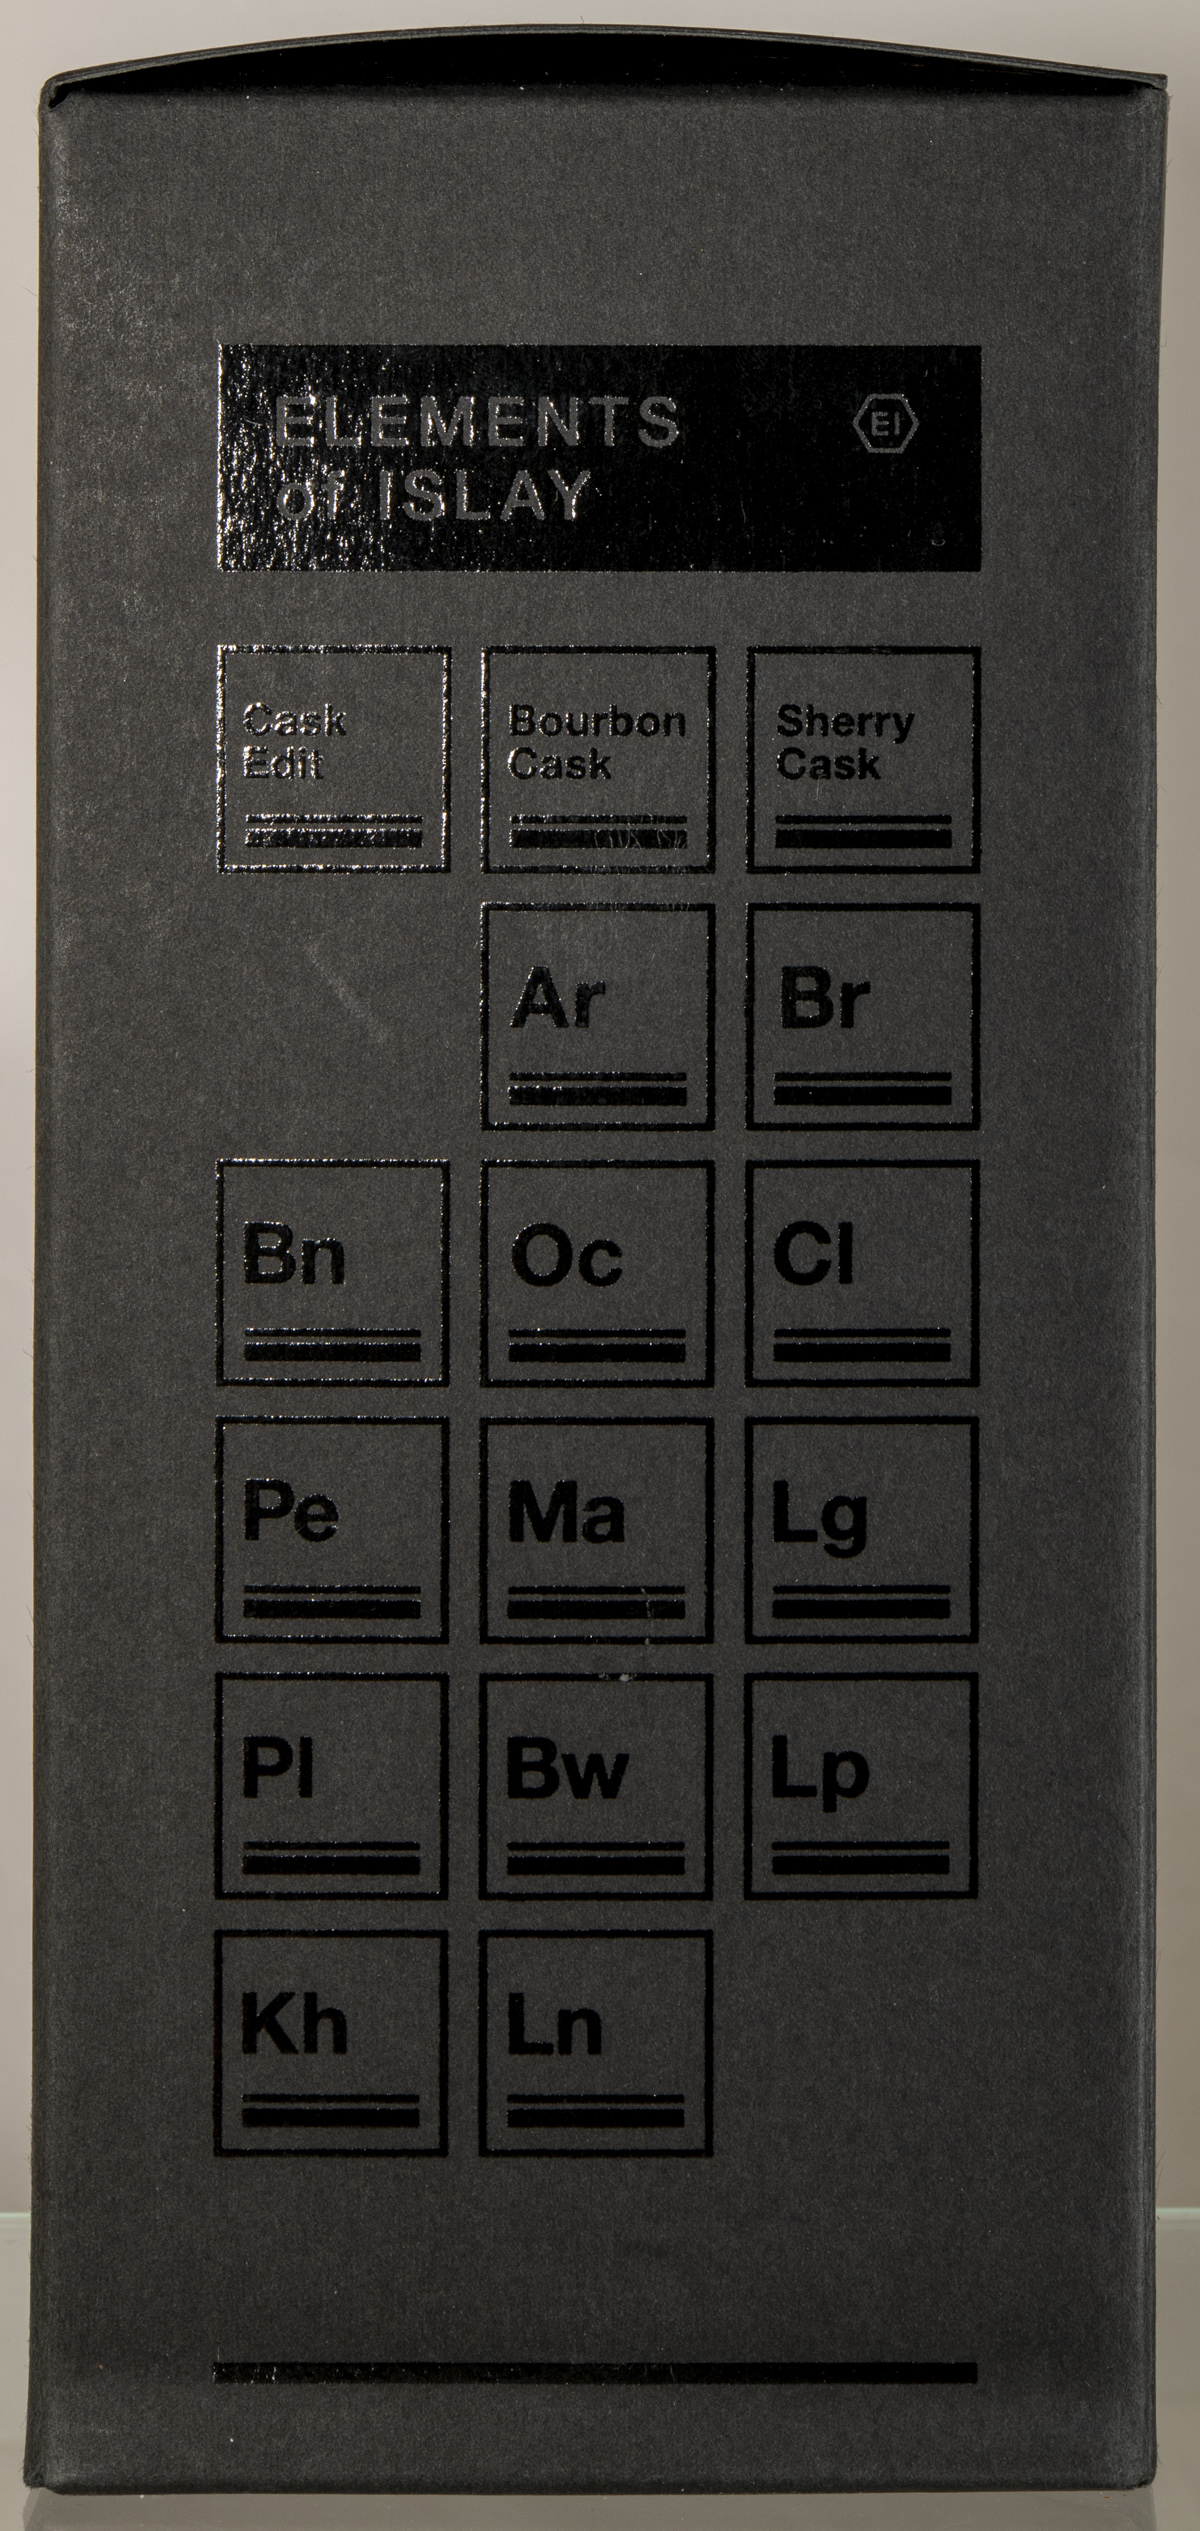 Billede: D85_8322 - Elements of Islay - Sherry Cask - box side.jpg